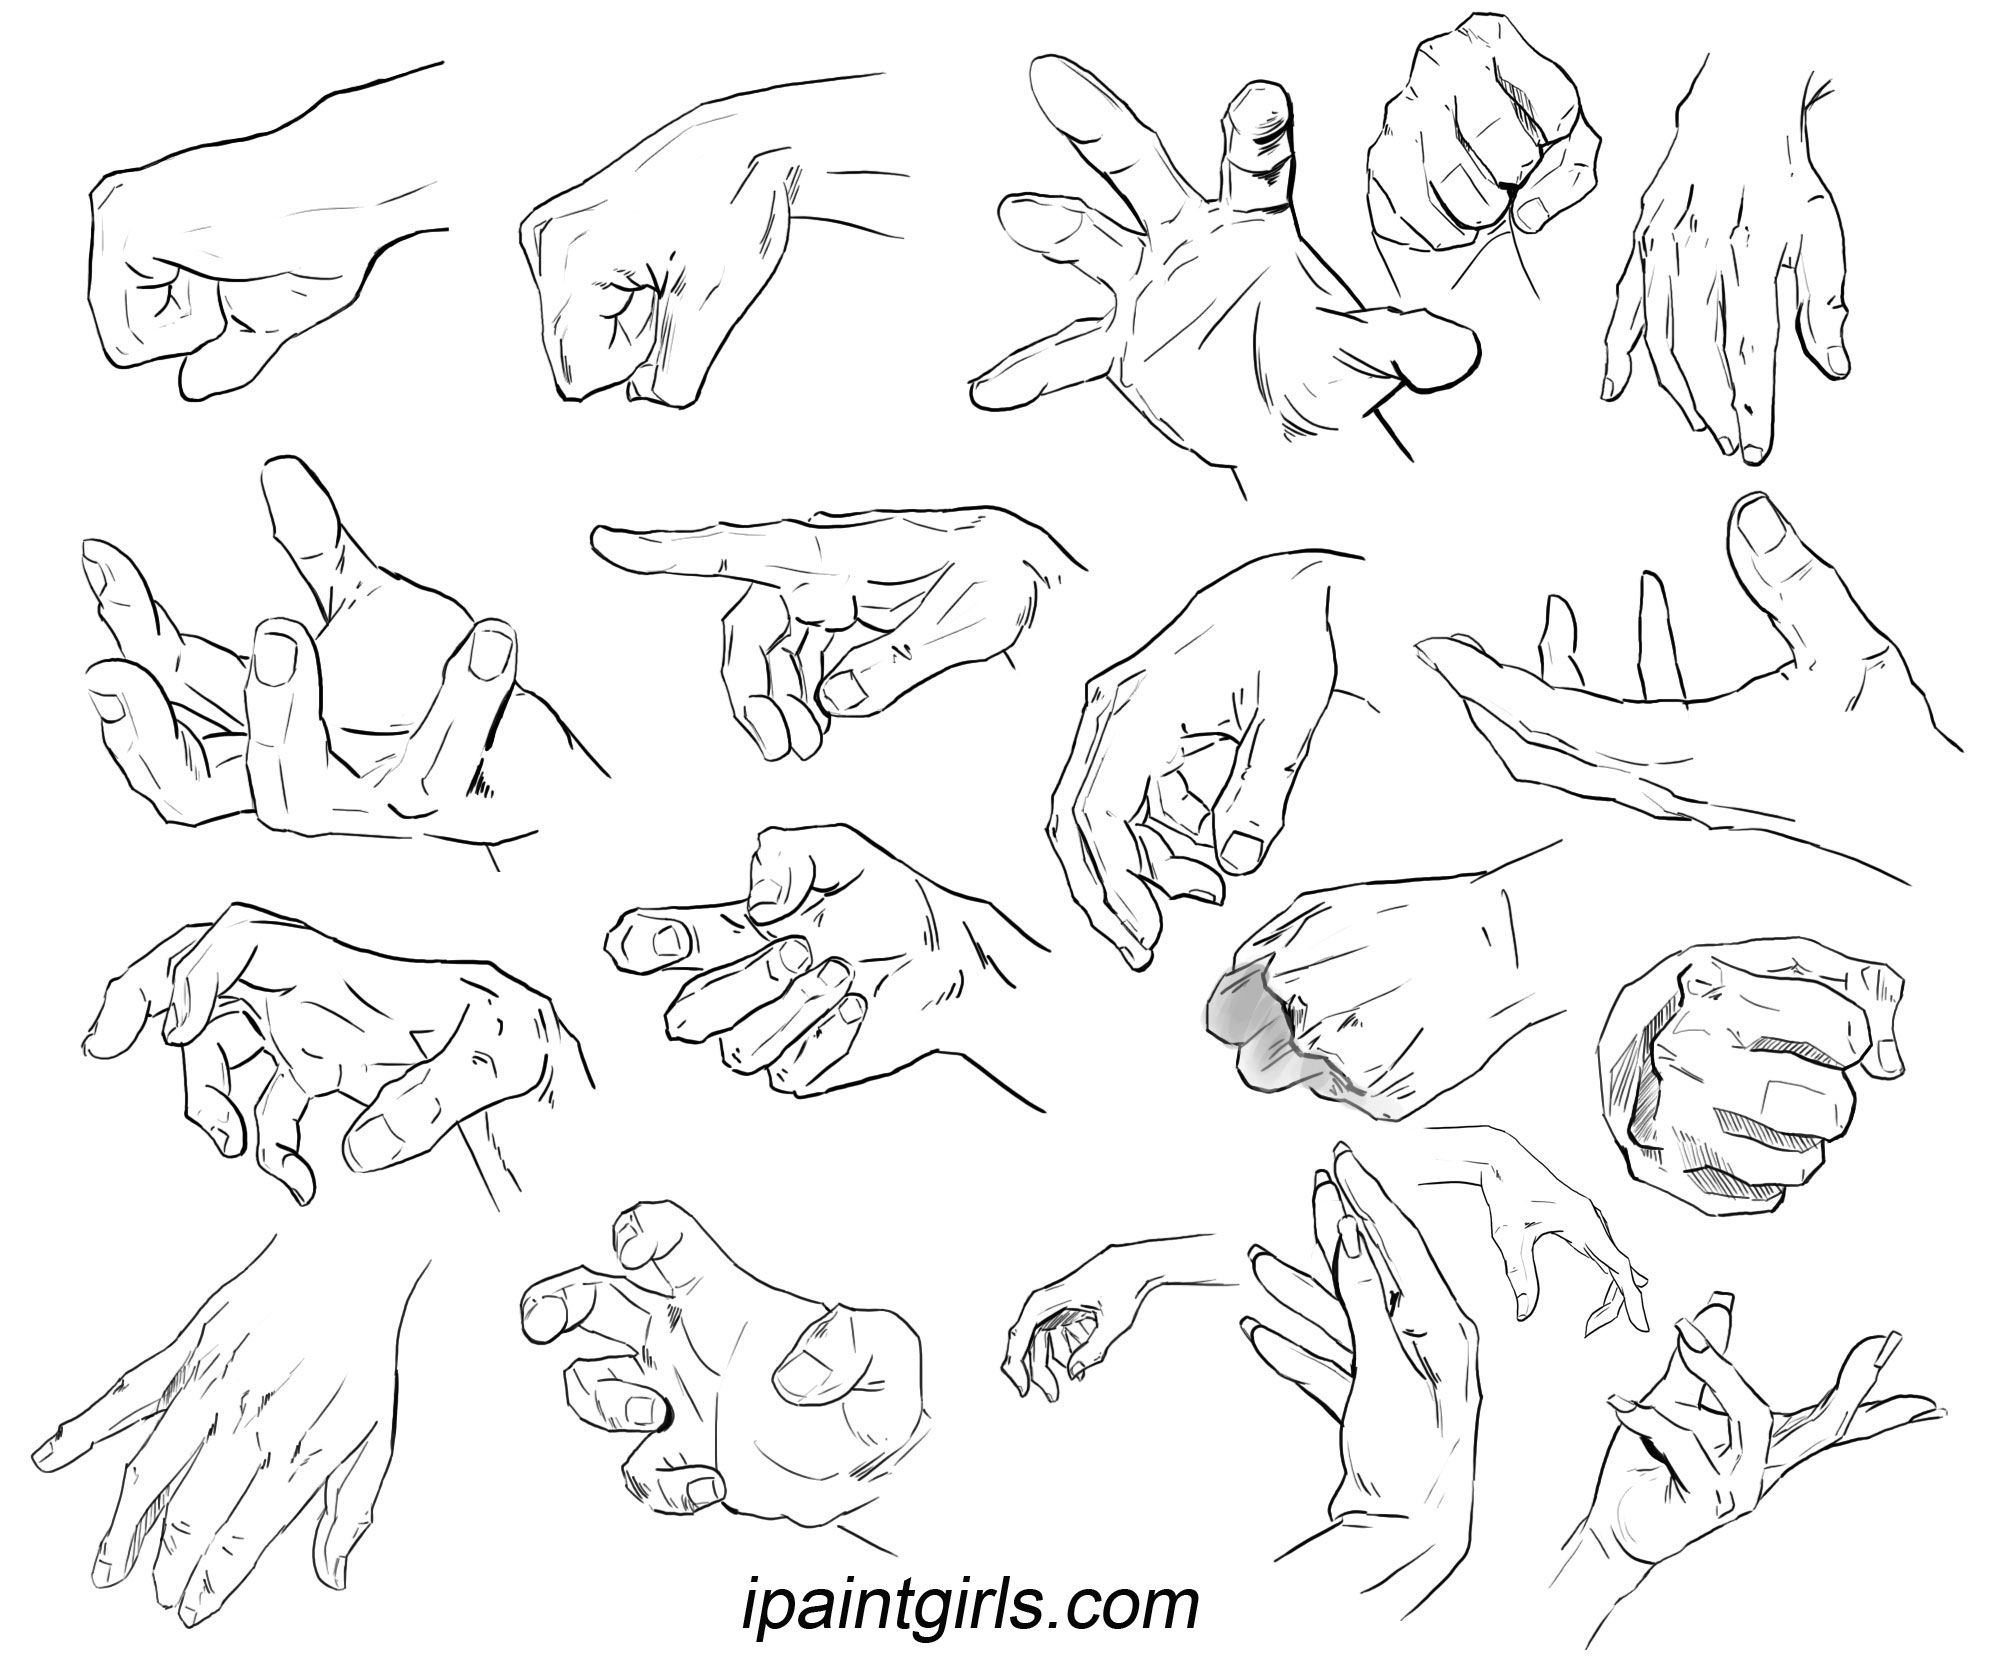 Референсы рук рисунок. Кисти рук референсы. Руки скетч. Позы кистей рук для рисования. Руки референсы для рисования.